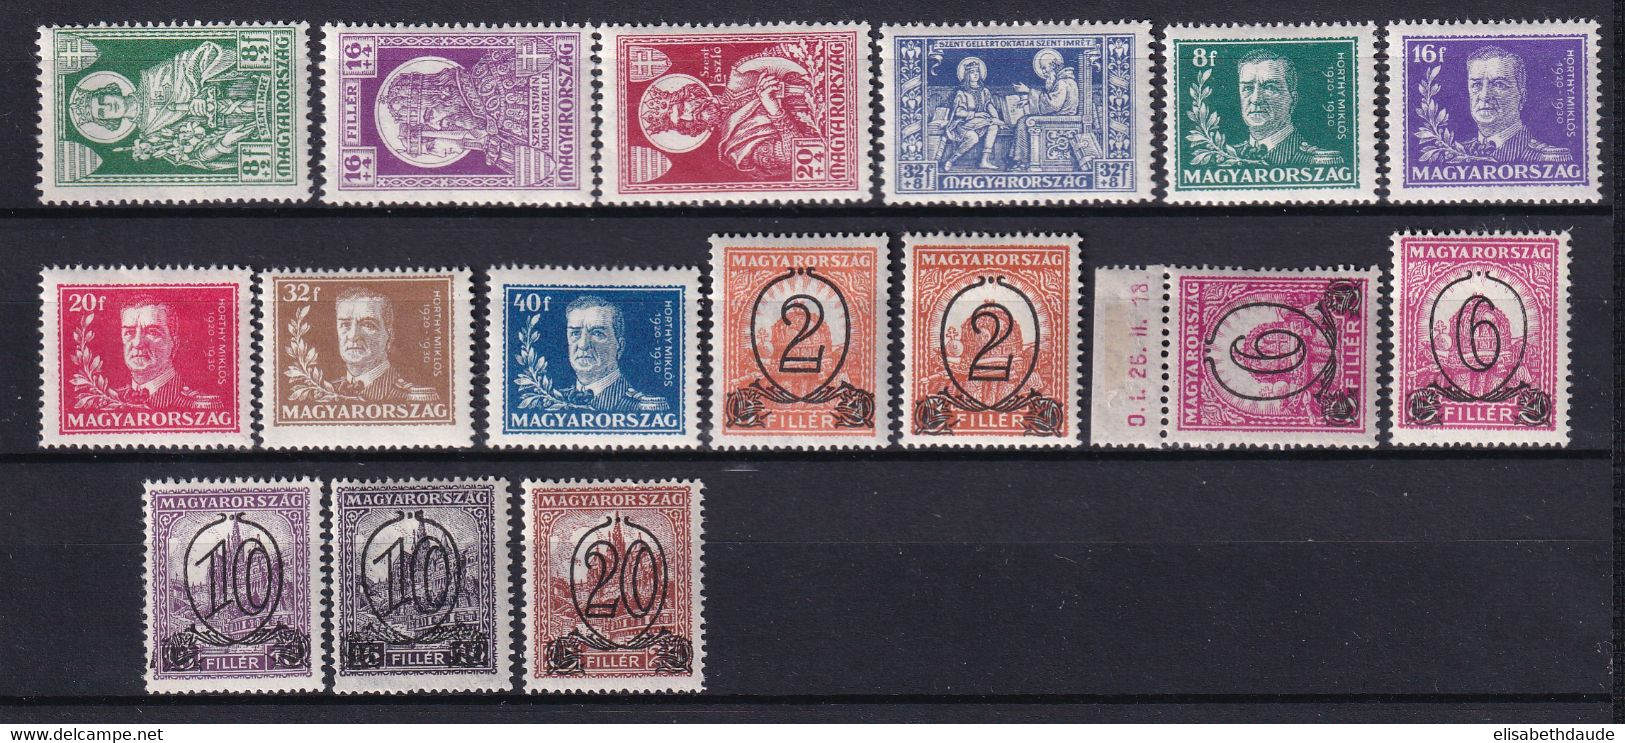 HONGRIE - ANNEE COMPLETE 1930 - YVERT N° 423/438 * MLH - COTE = 45 EUR. - Full Years